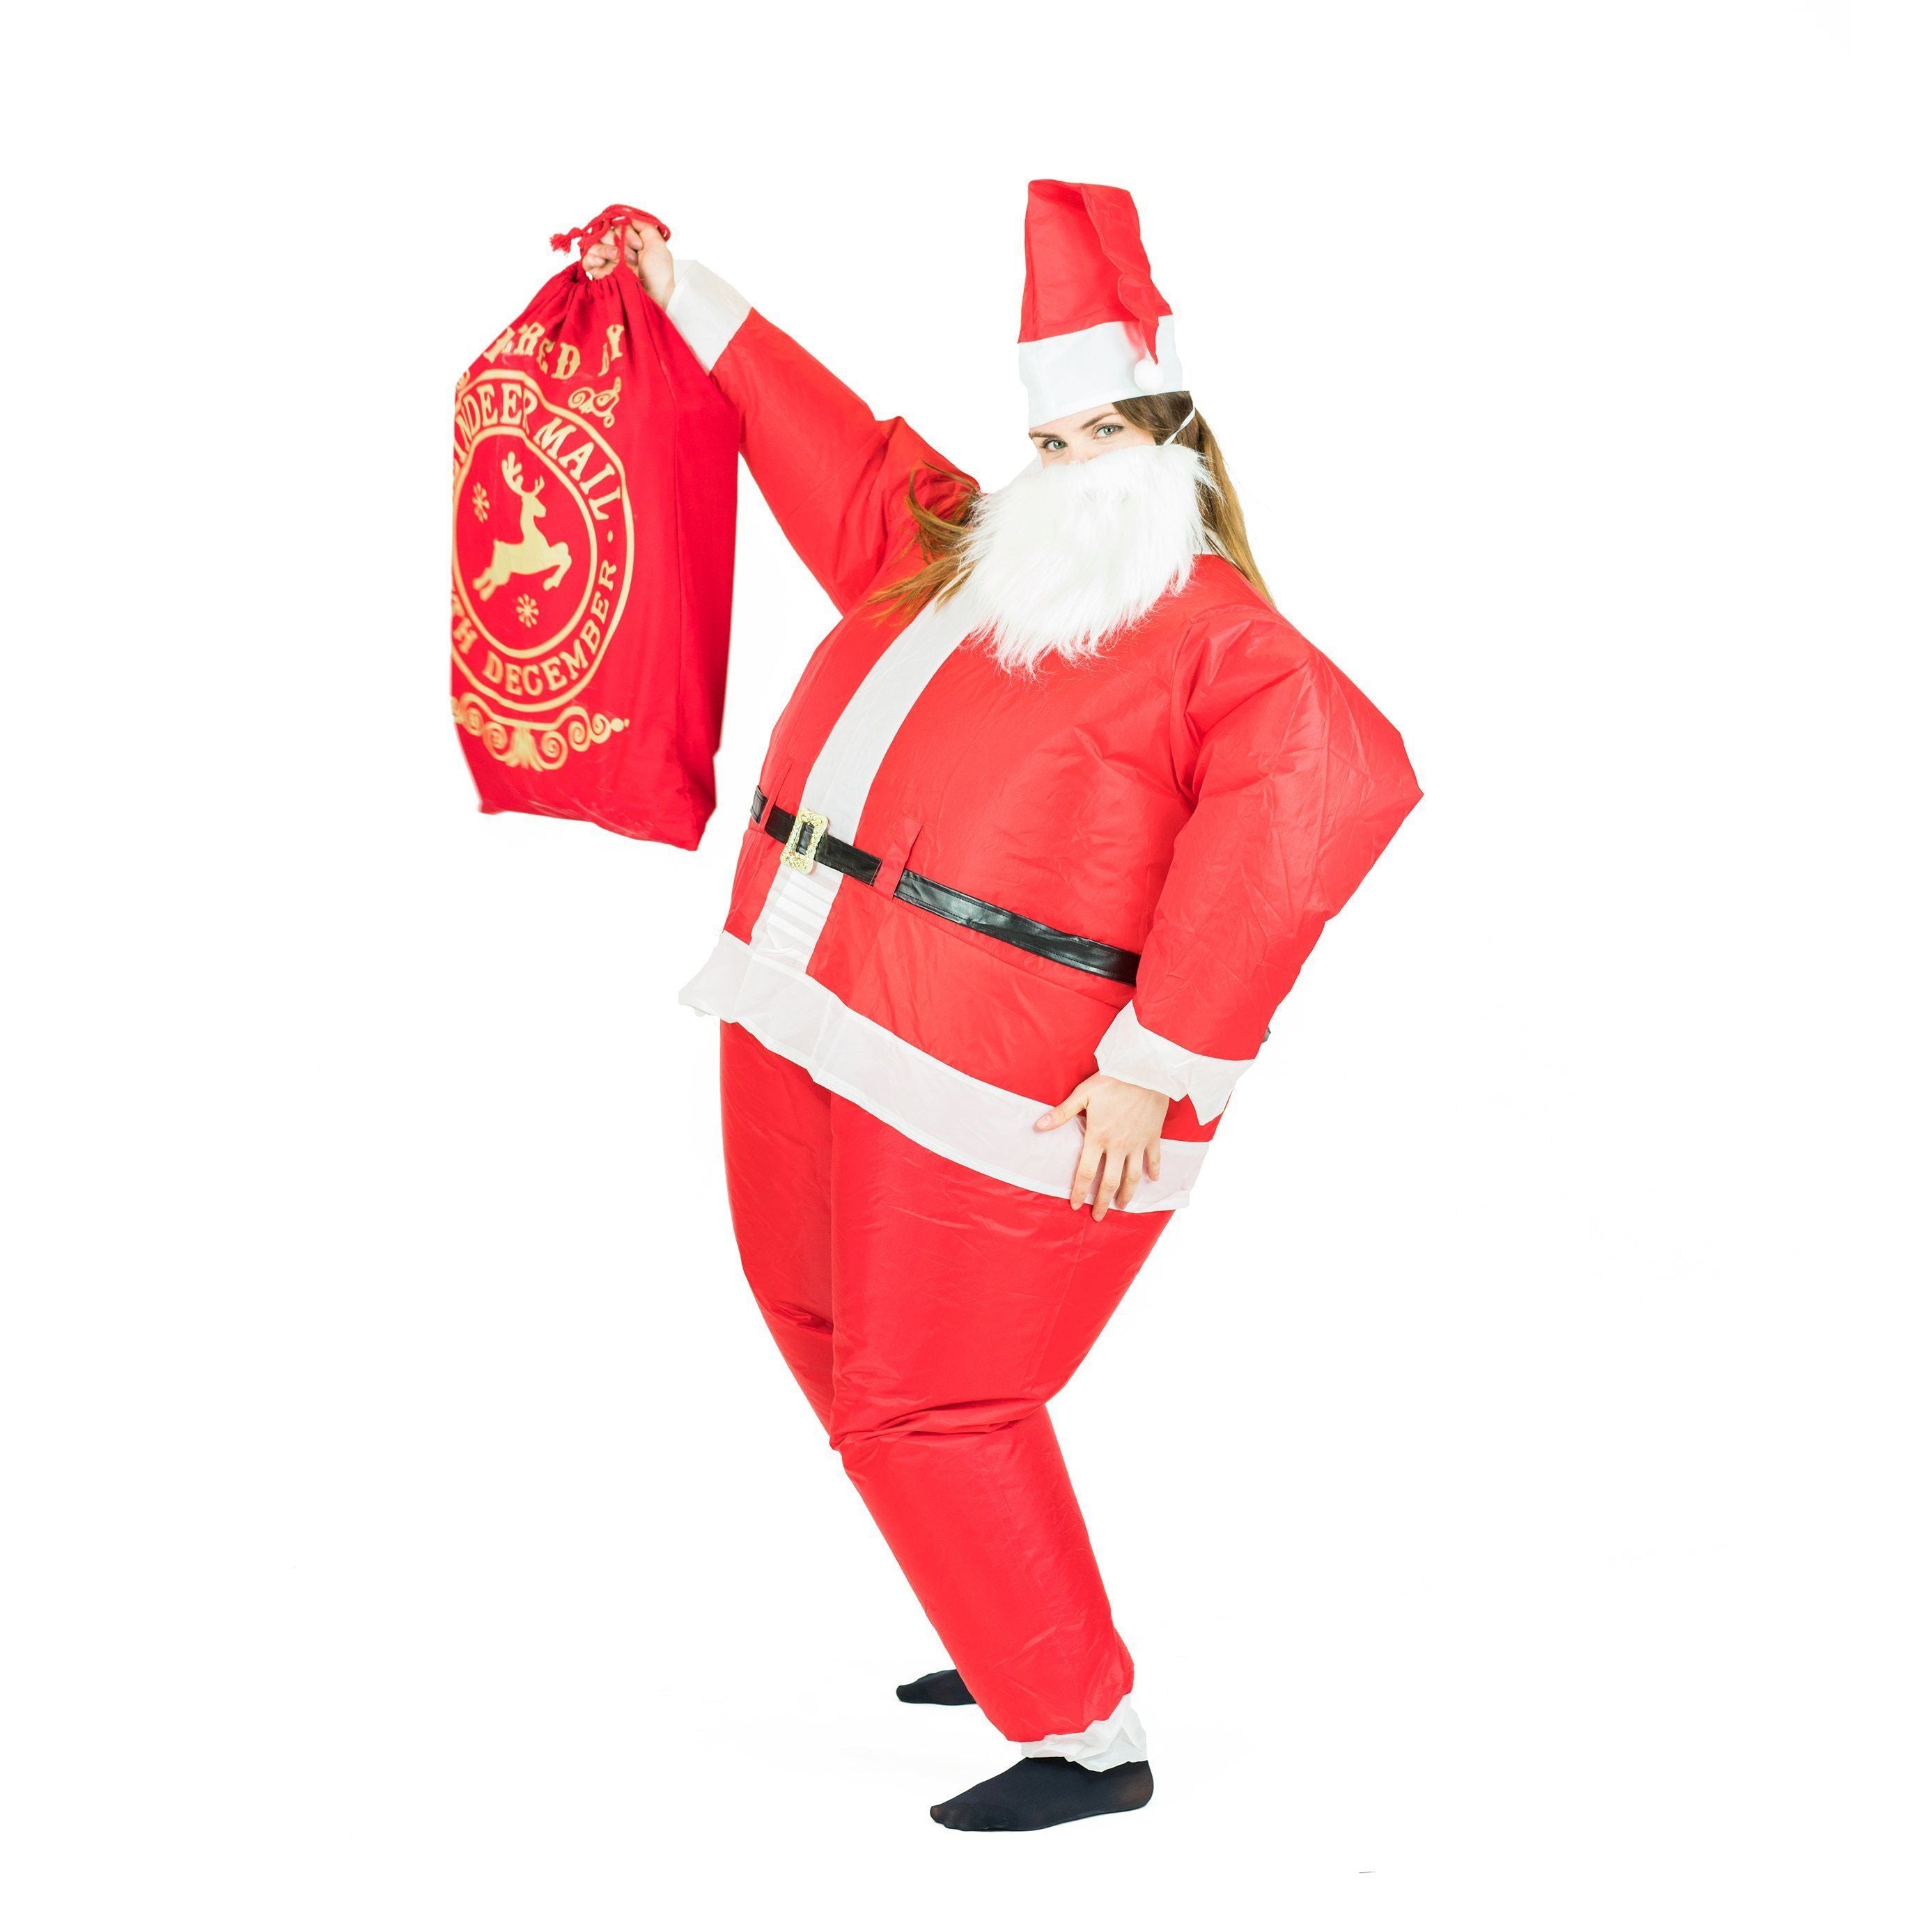 NOLITOY Vestiti Gonfiabili Giganti Per Bambini Costume Cosplay Di Natale  Divertente Costume Gonfiabile Saltare Panno in Poliestere Rivestito in Pu